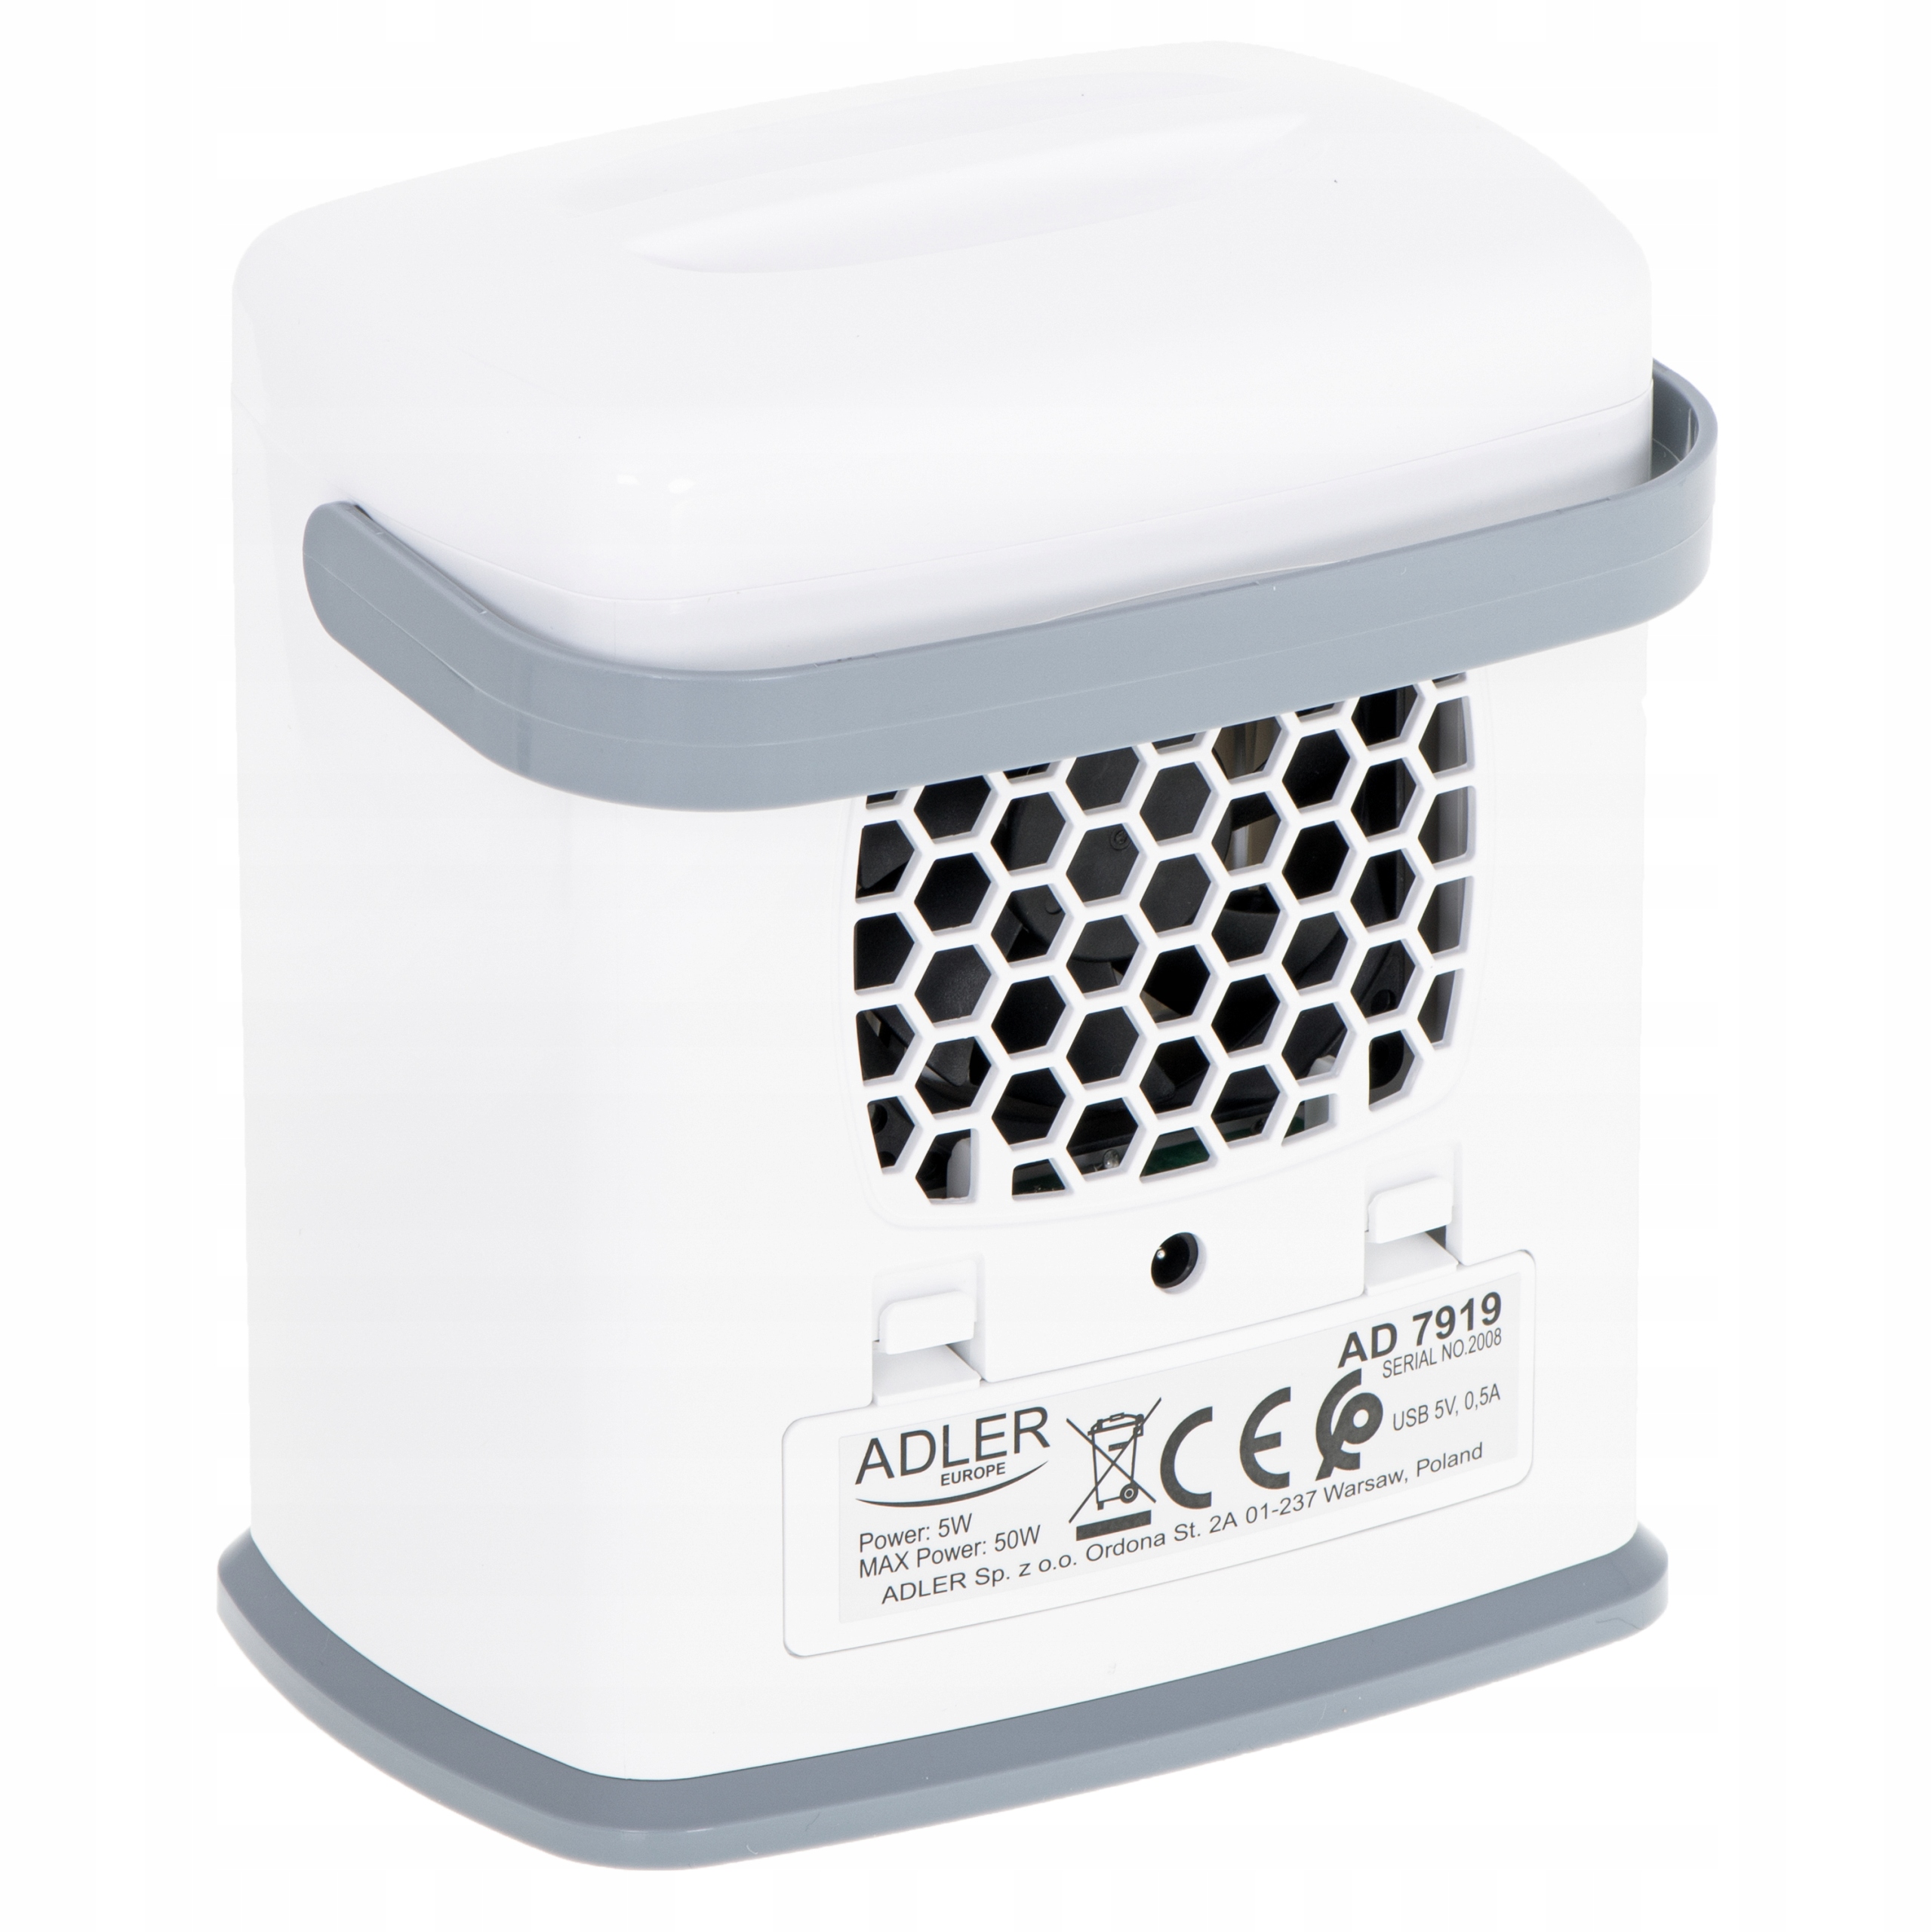 Adler ad 7919 Air Cooler 3in1. Охладитель воздуха ad-09-v. Портативный вентилятор с увлажнителем воздуха настольный USB. Мобильный кондиционер Adler ad 7916.